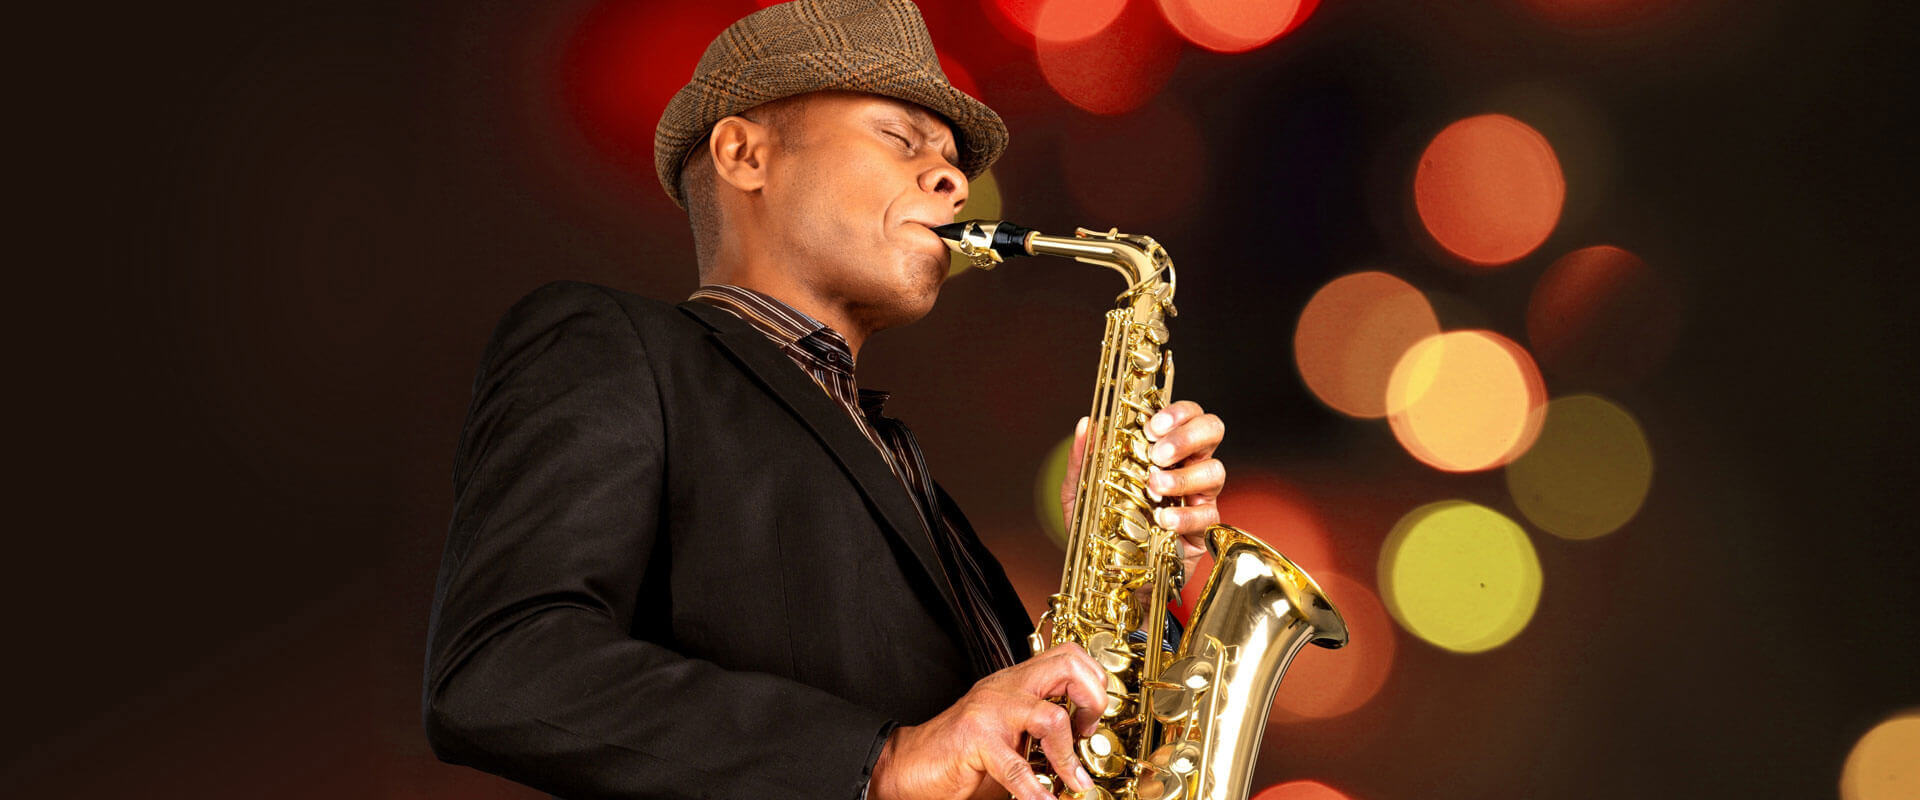 Saxophone Lessons Birmingham, MI